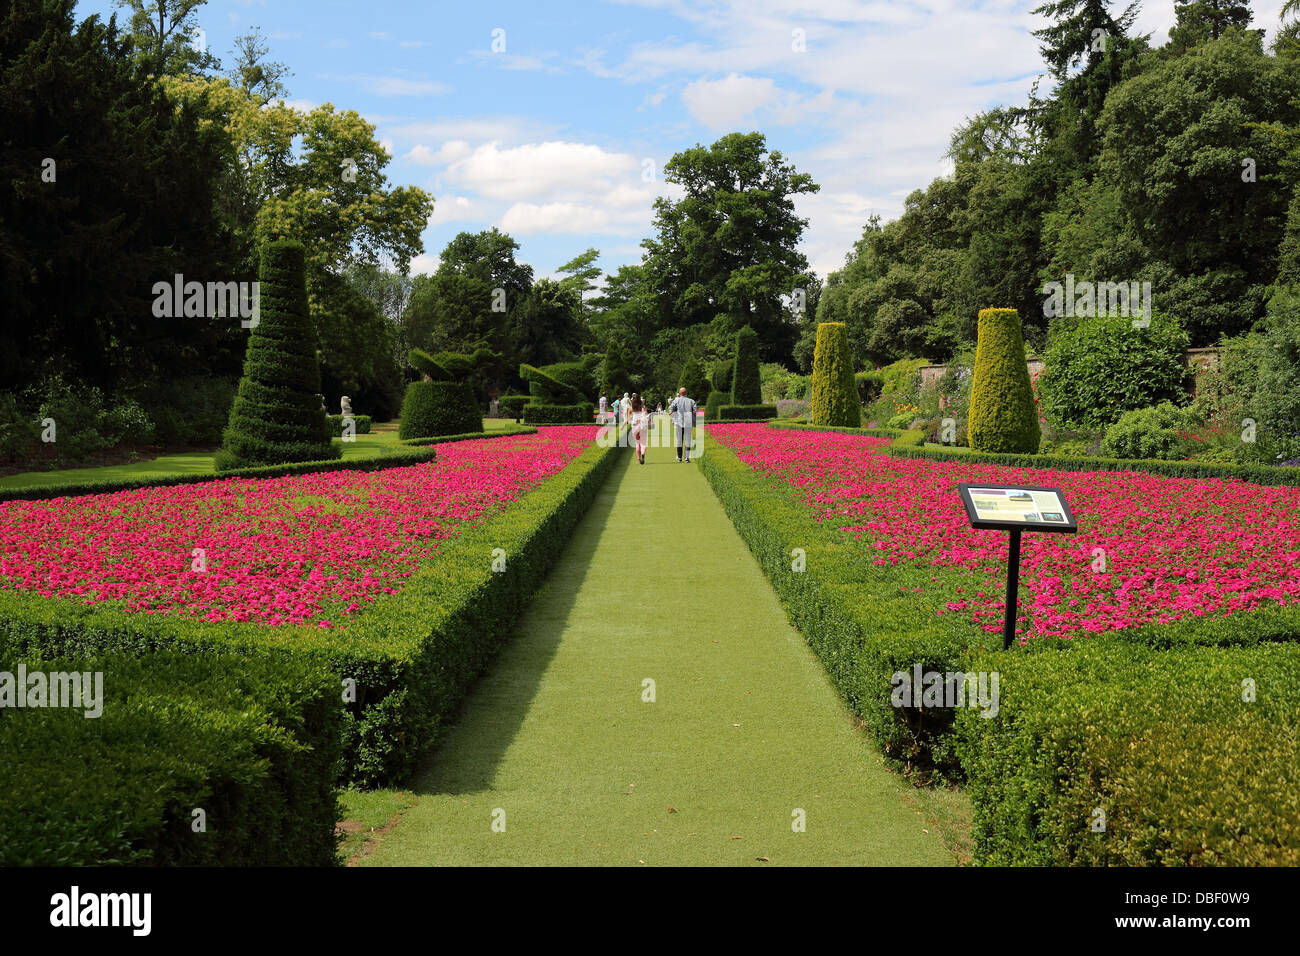 Formale englische Garten mit Pfad zwischen bunten Blumenbeeten Stockfoto